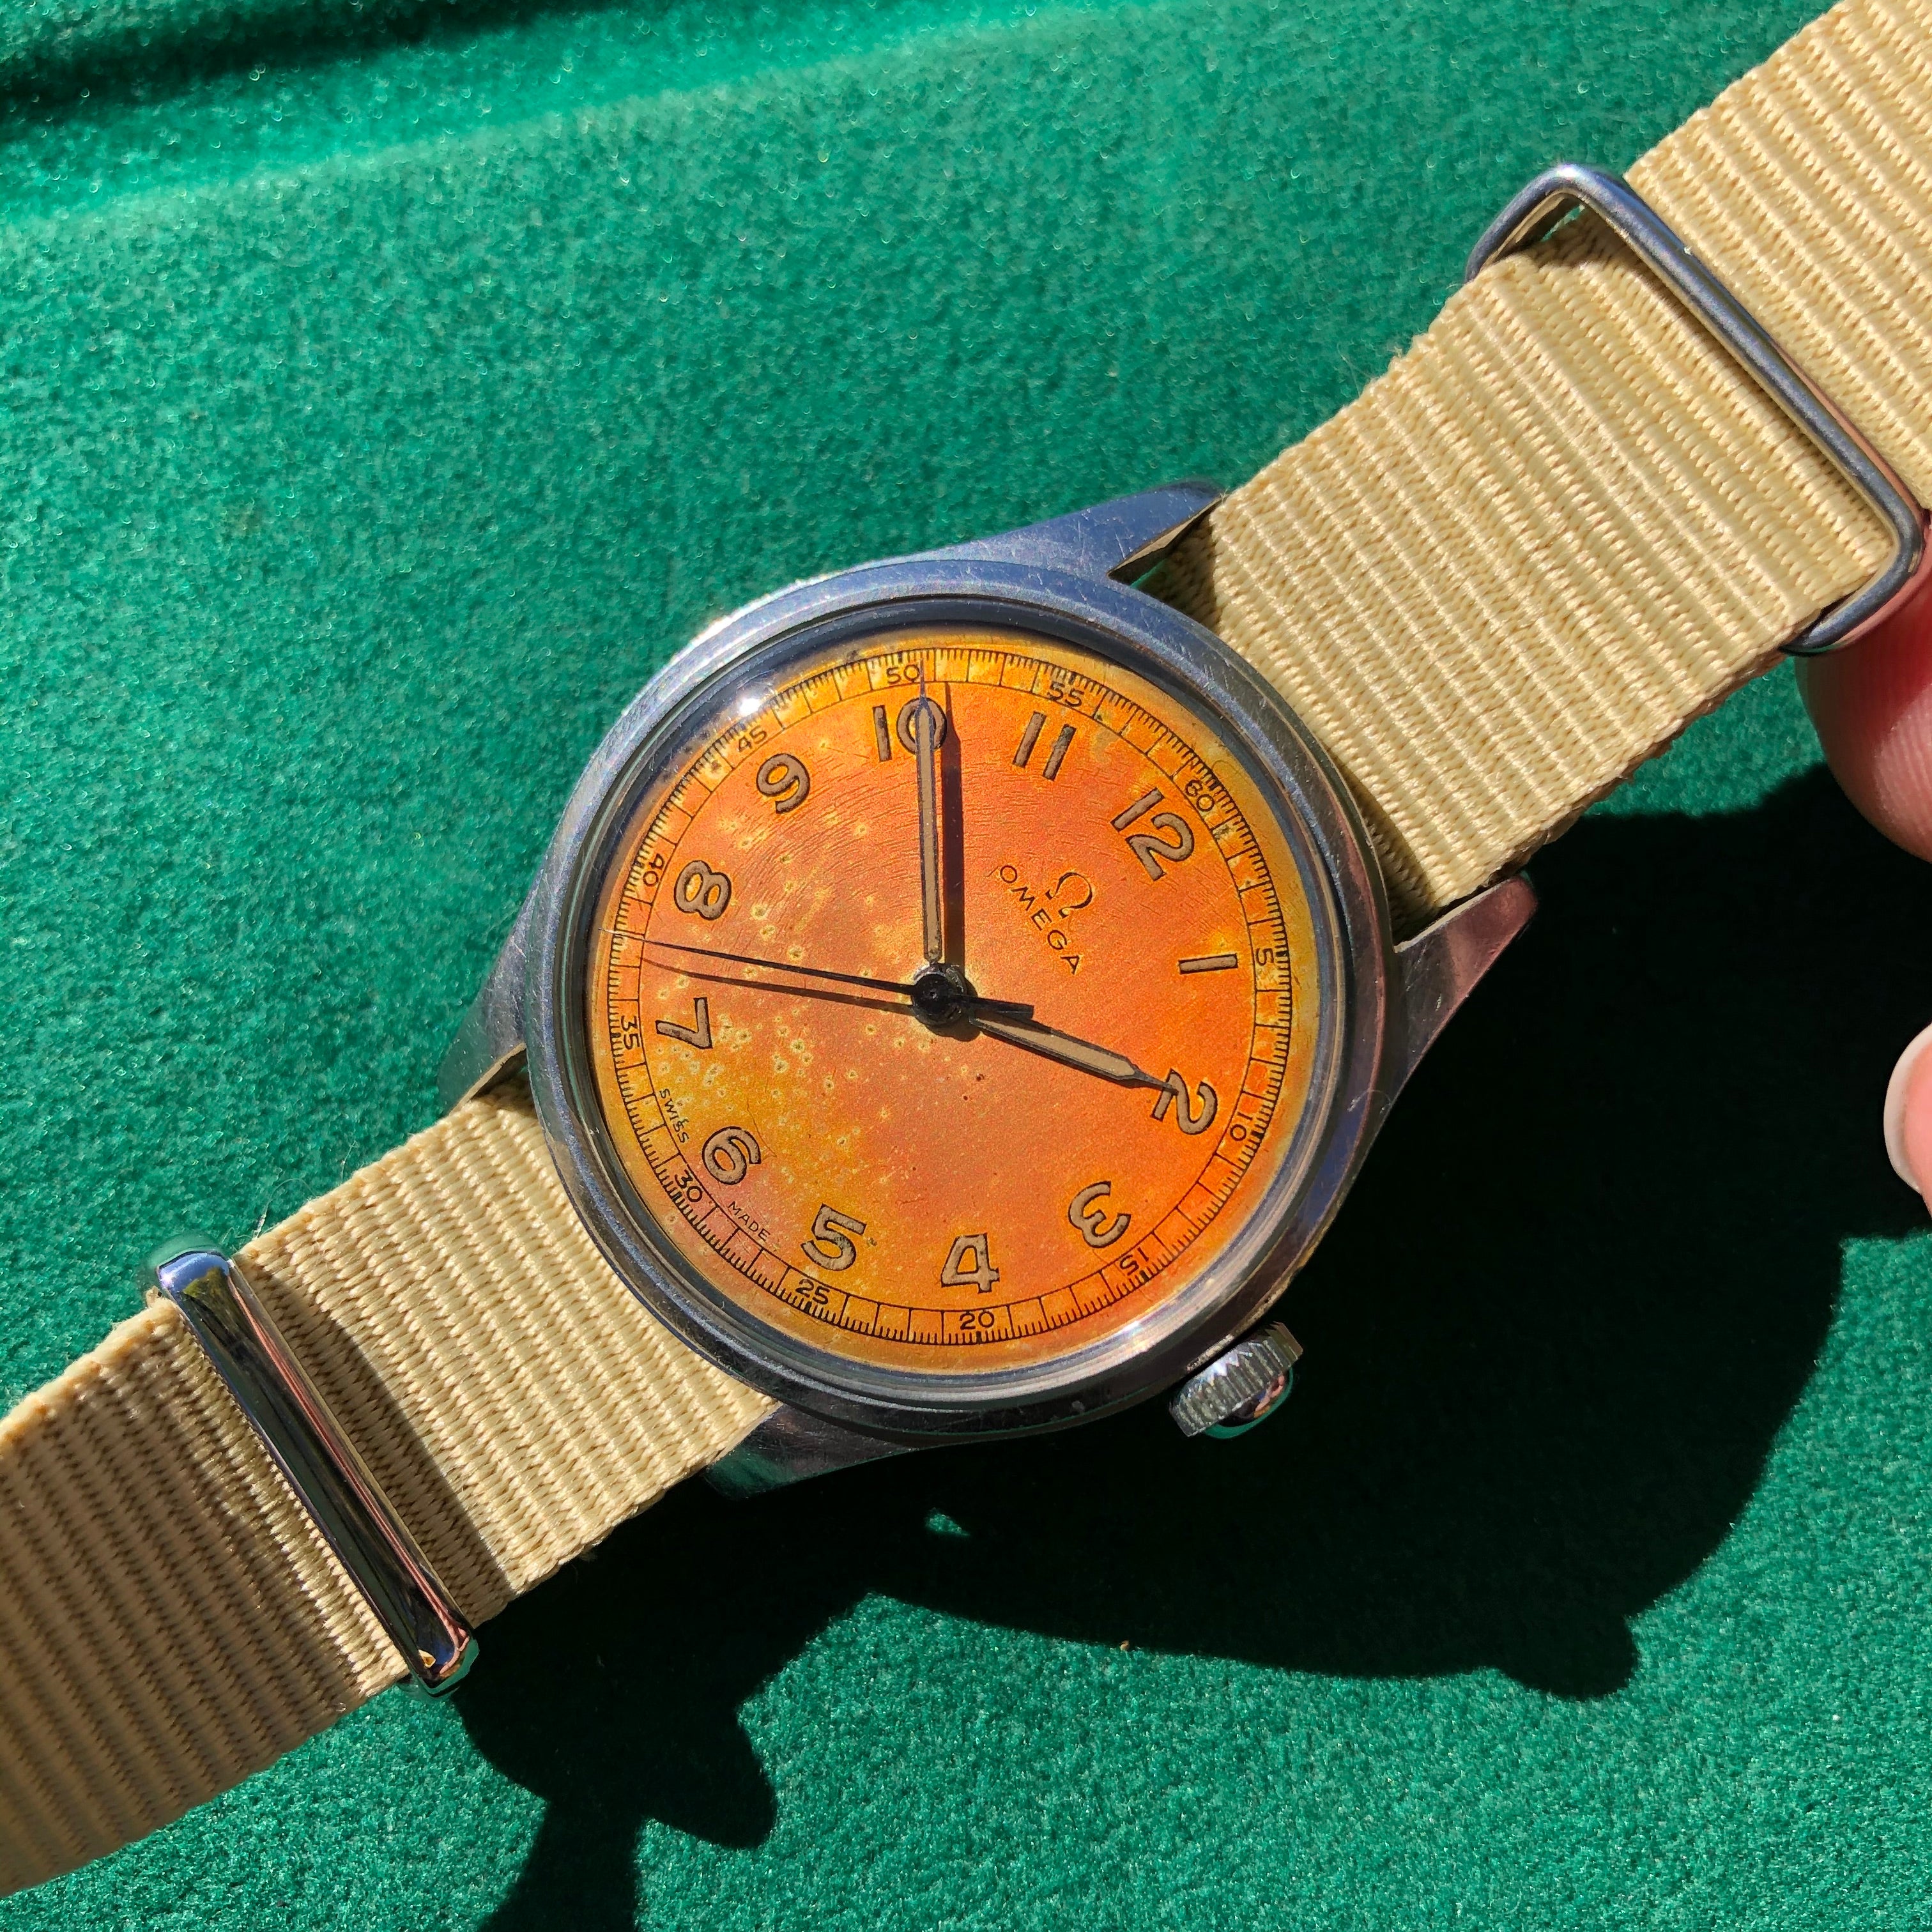 radium watches